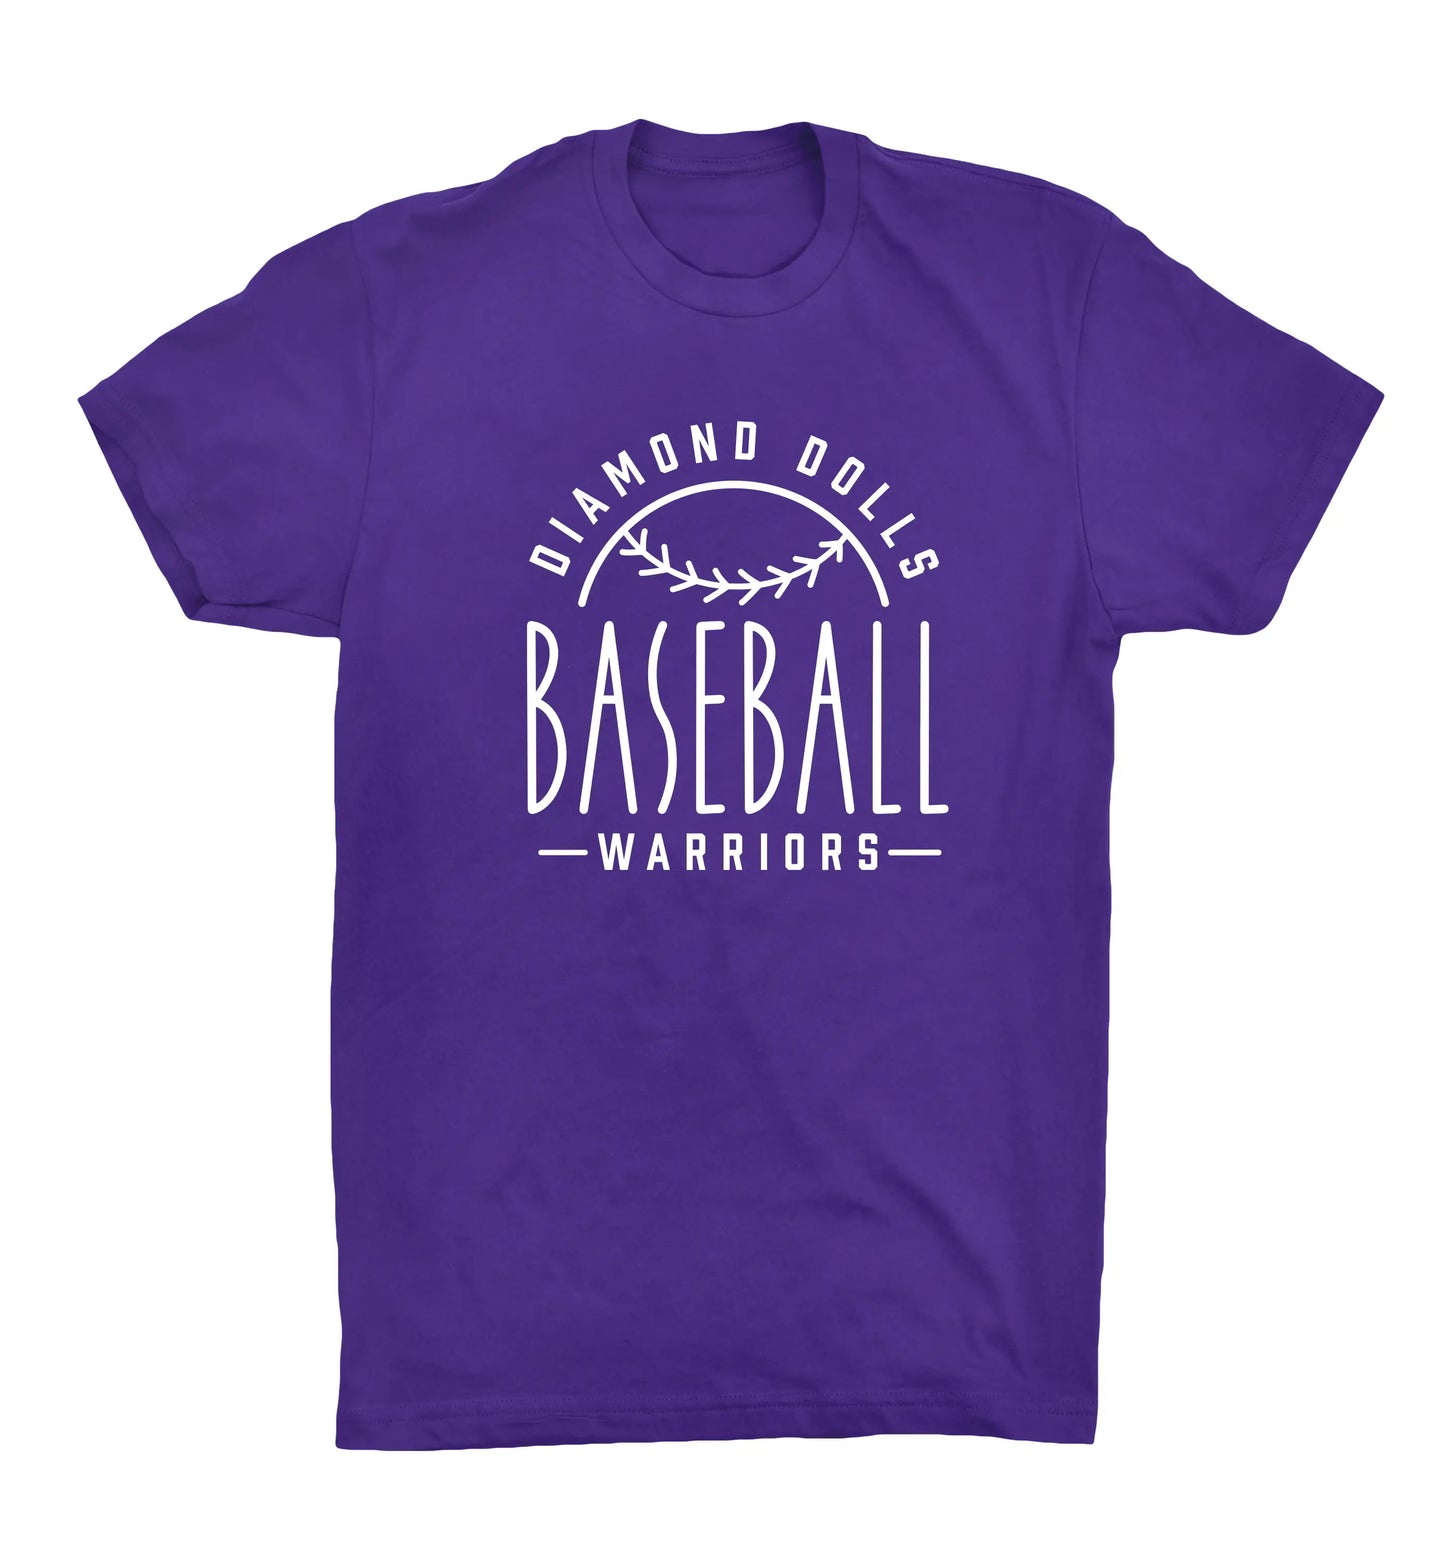 BASEBALL - Diamond Dolls Tshirt - 64000